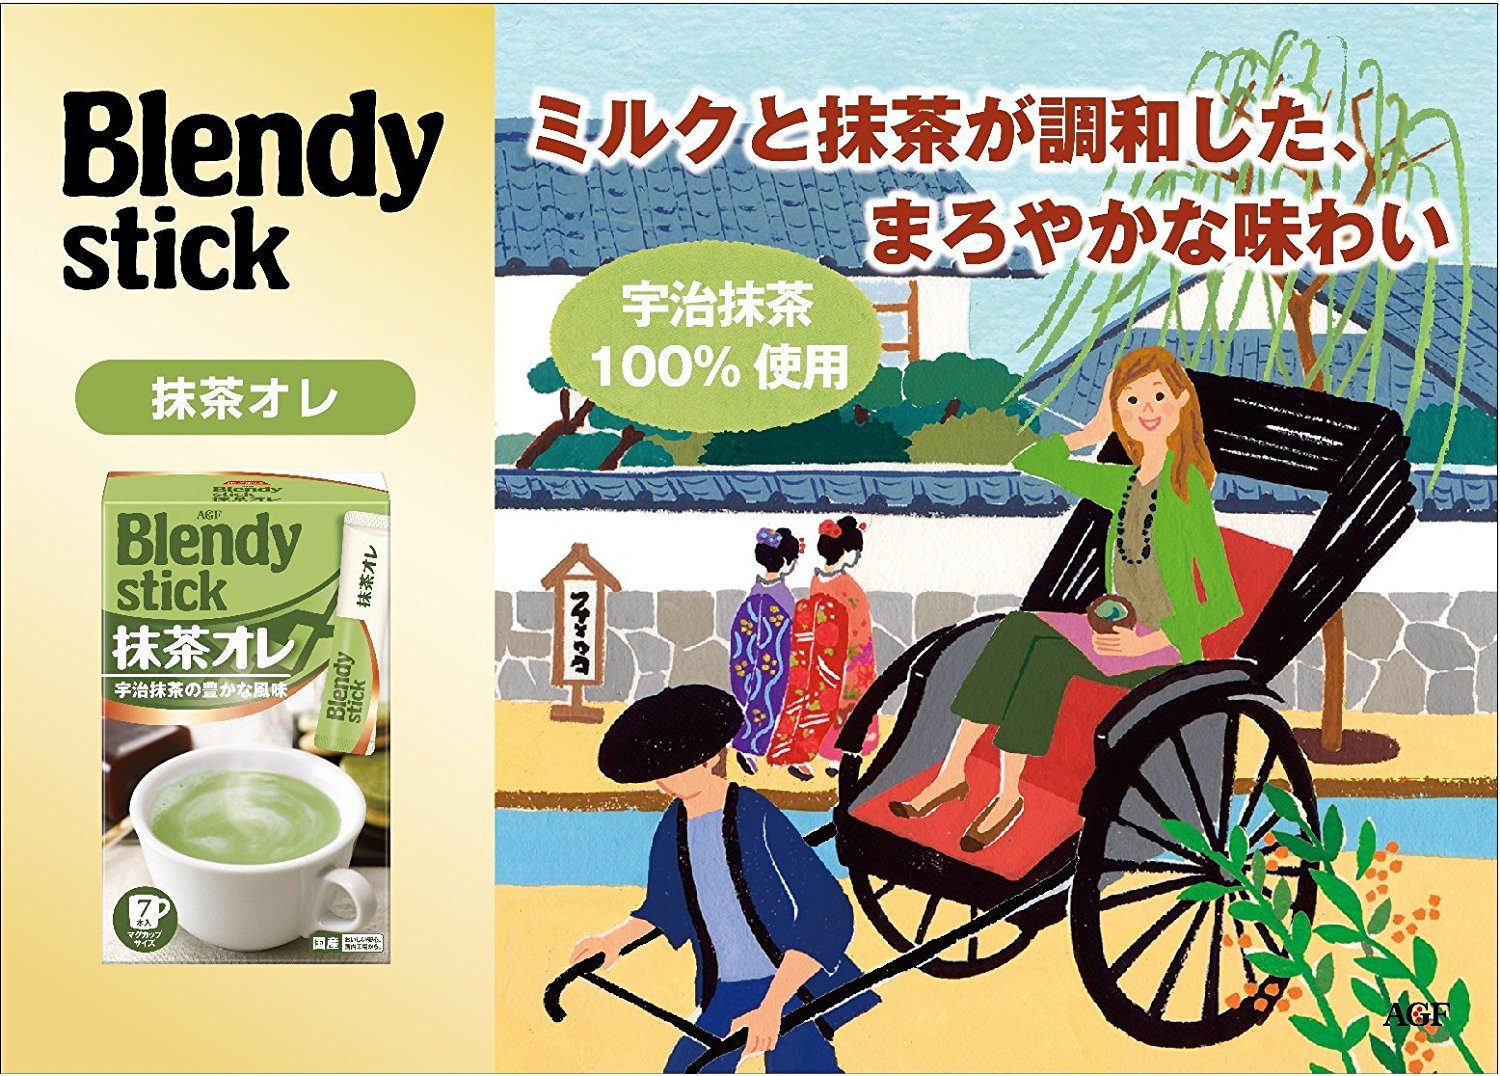 AGF Blendy Matcha Milk Tea - 5 Sweet Assortments